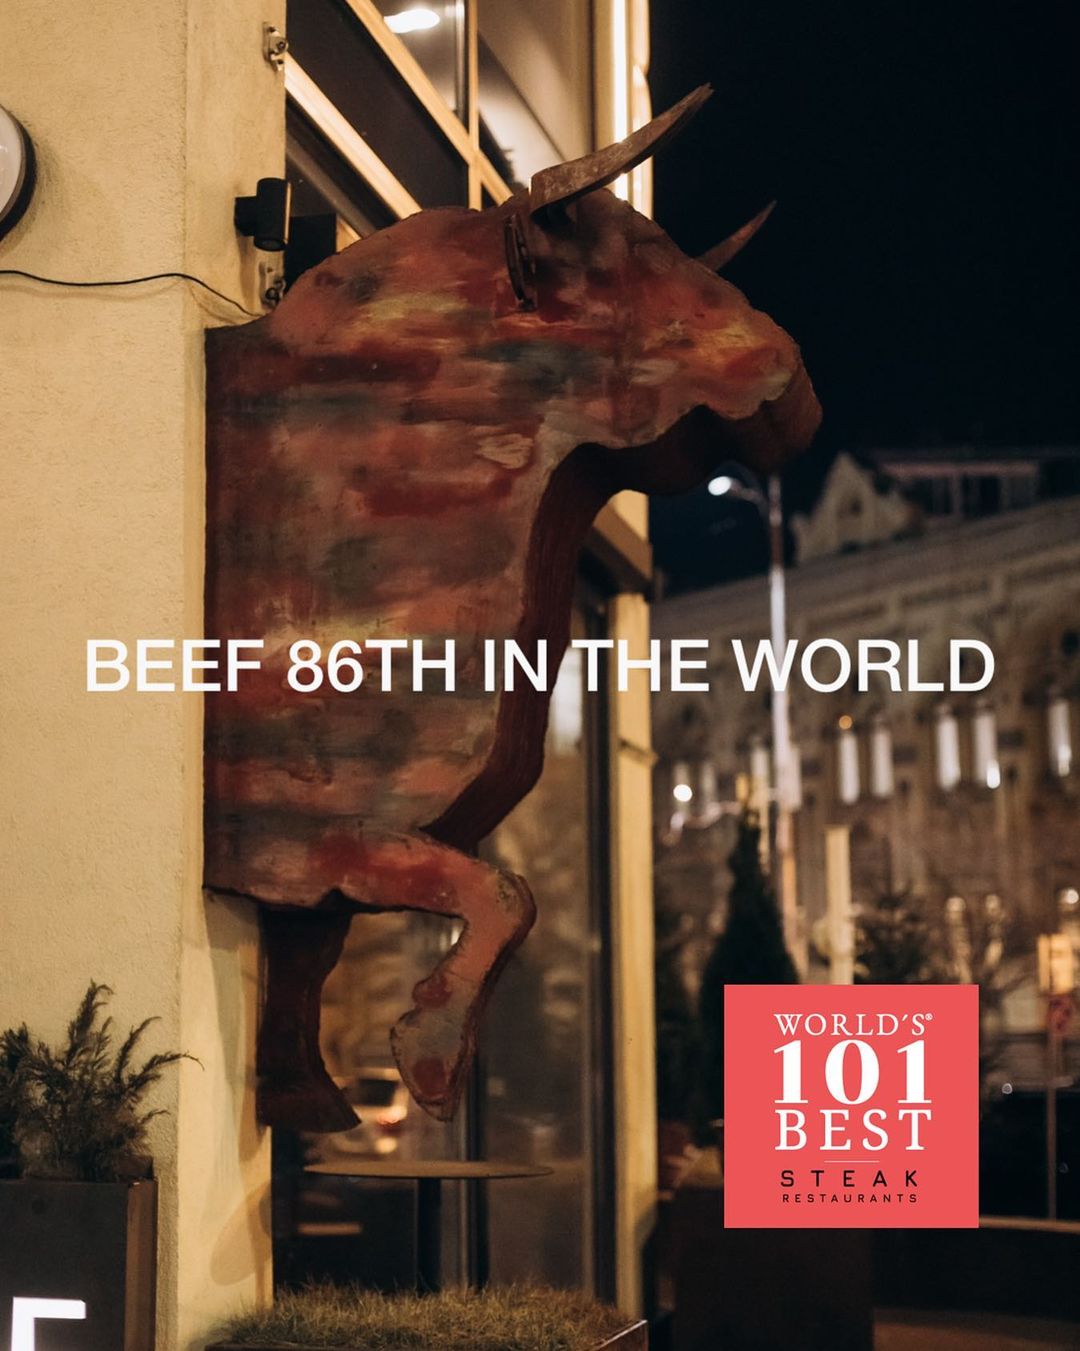 Киевский ресторан Beef вошел в рейтинг лучших мясных заведений мира